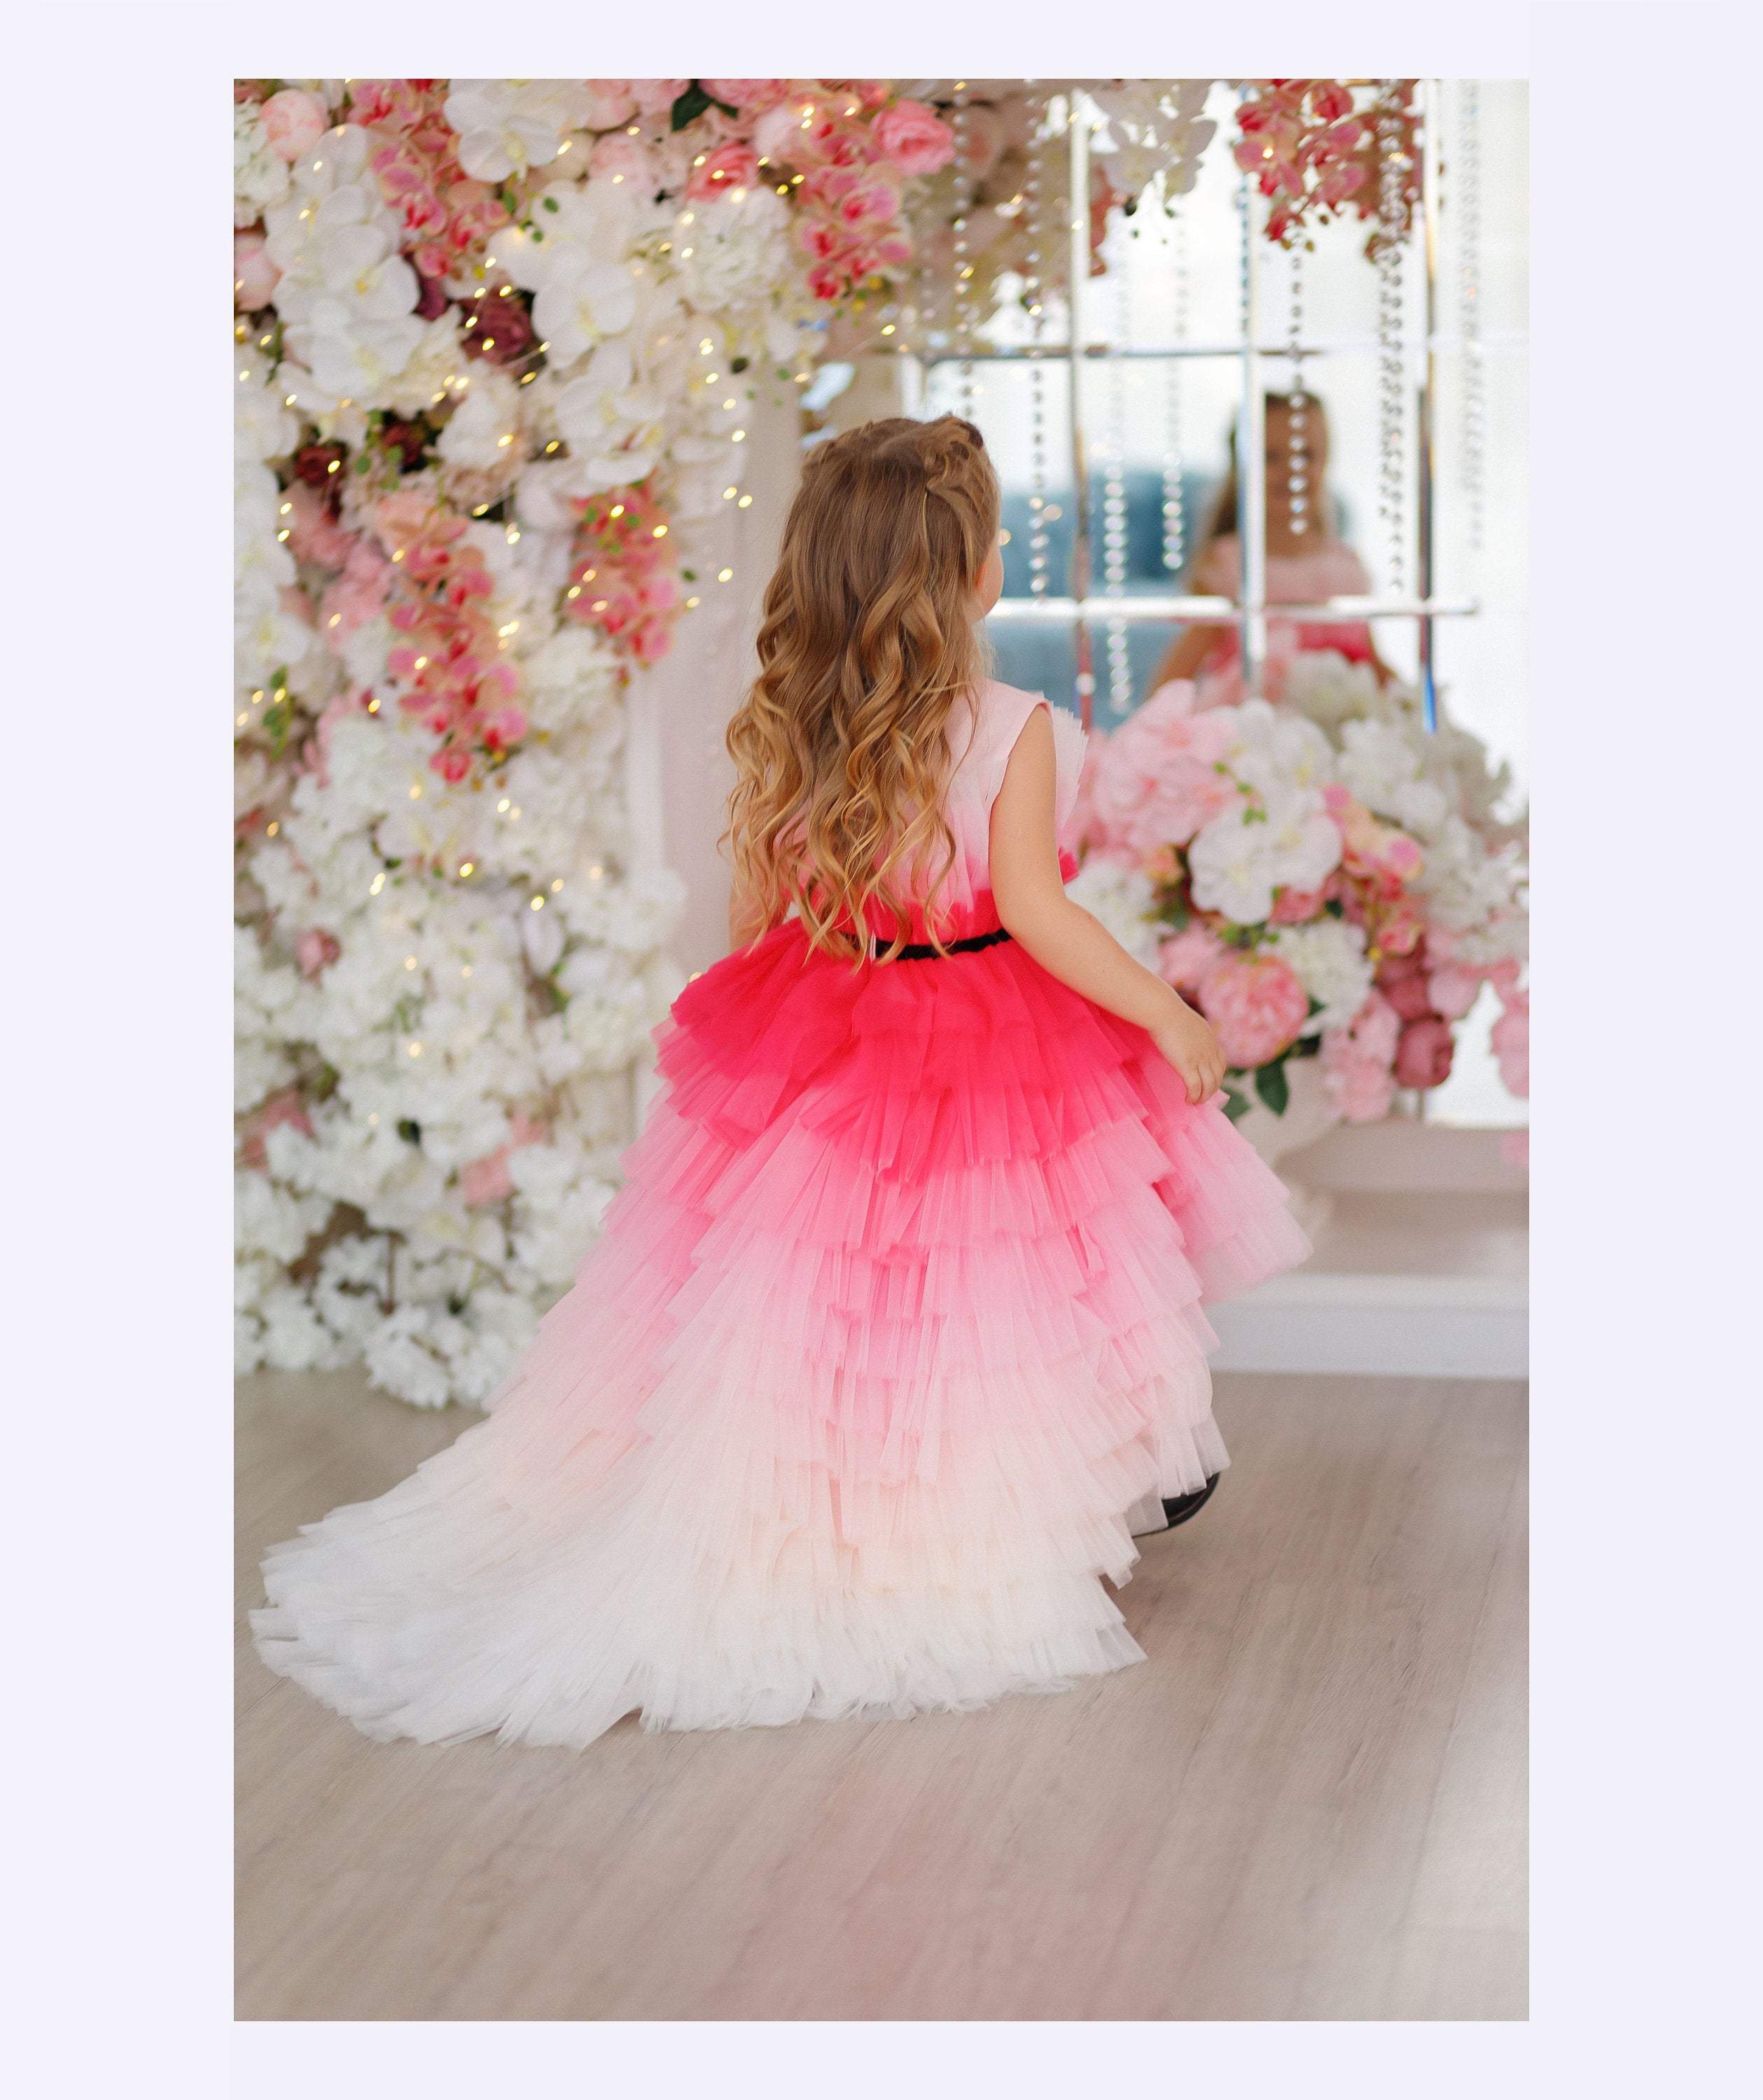 Matchinglook Princess Flower Girl Dress